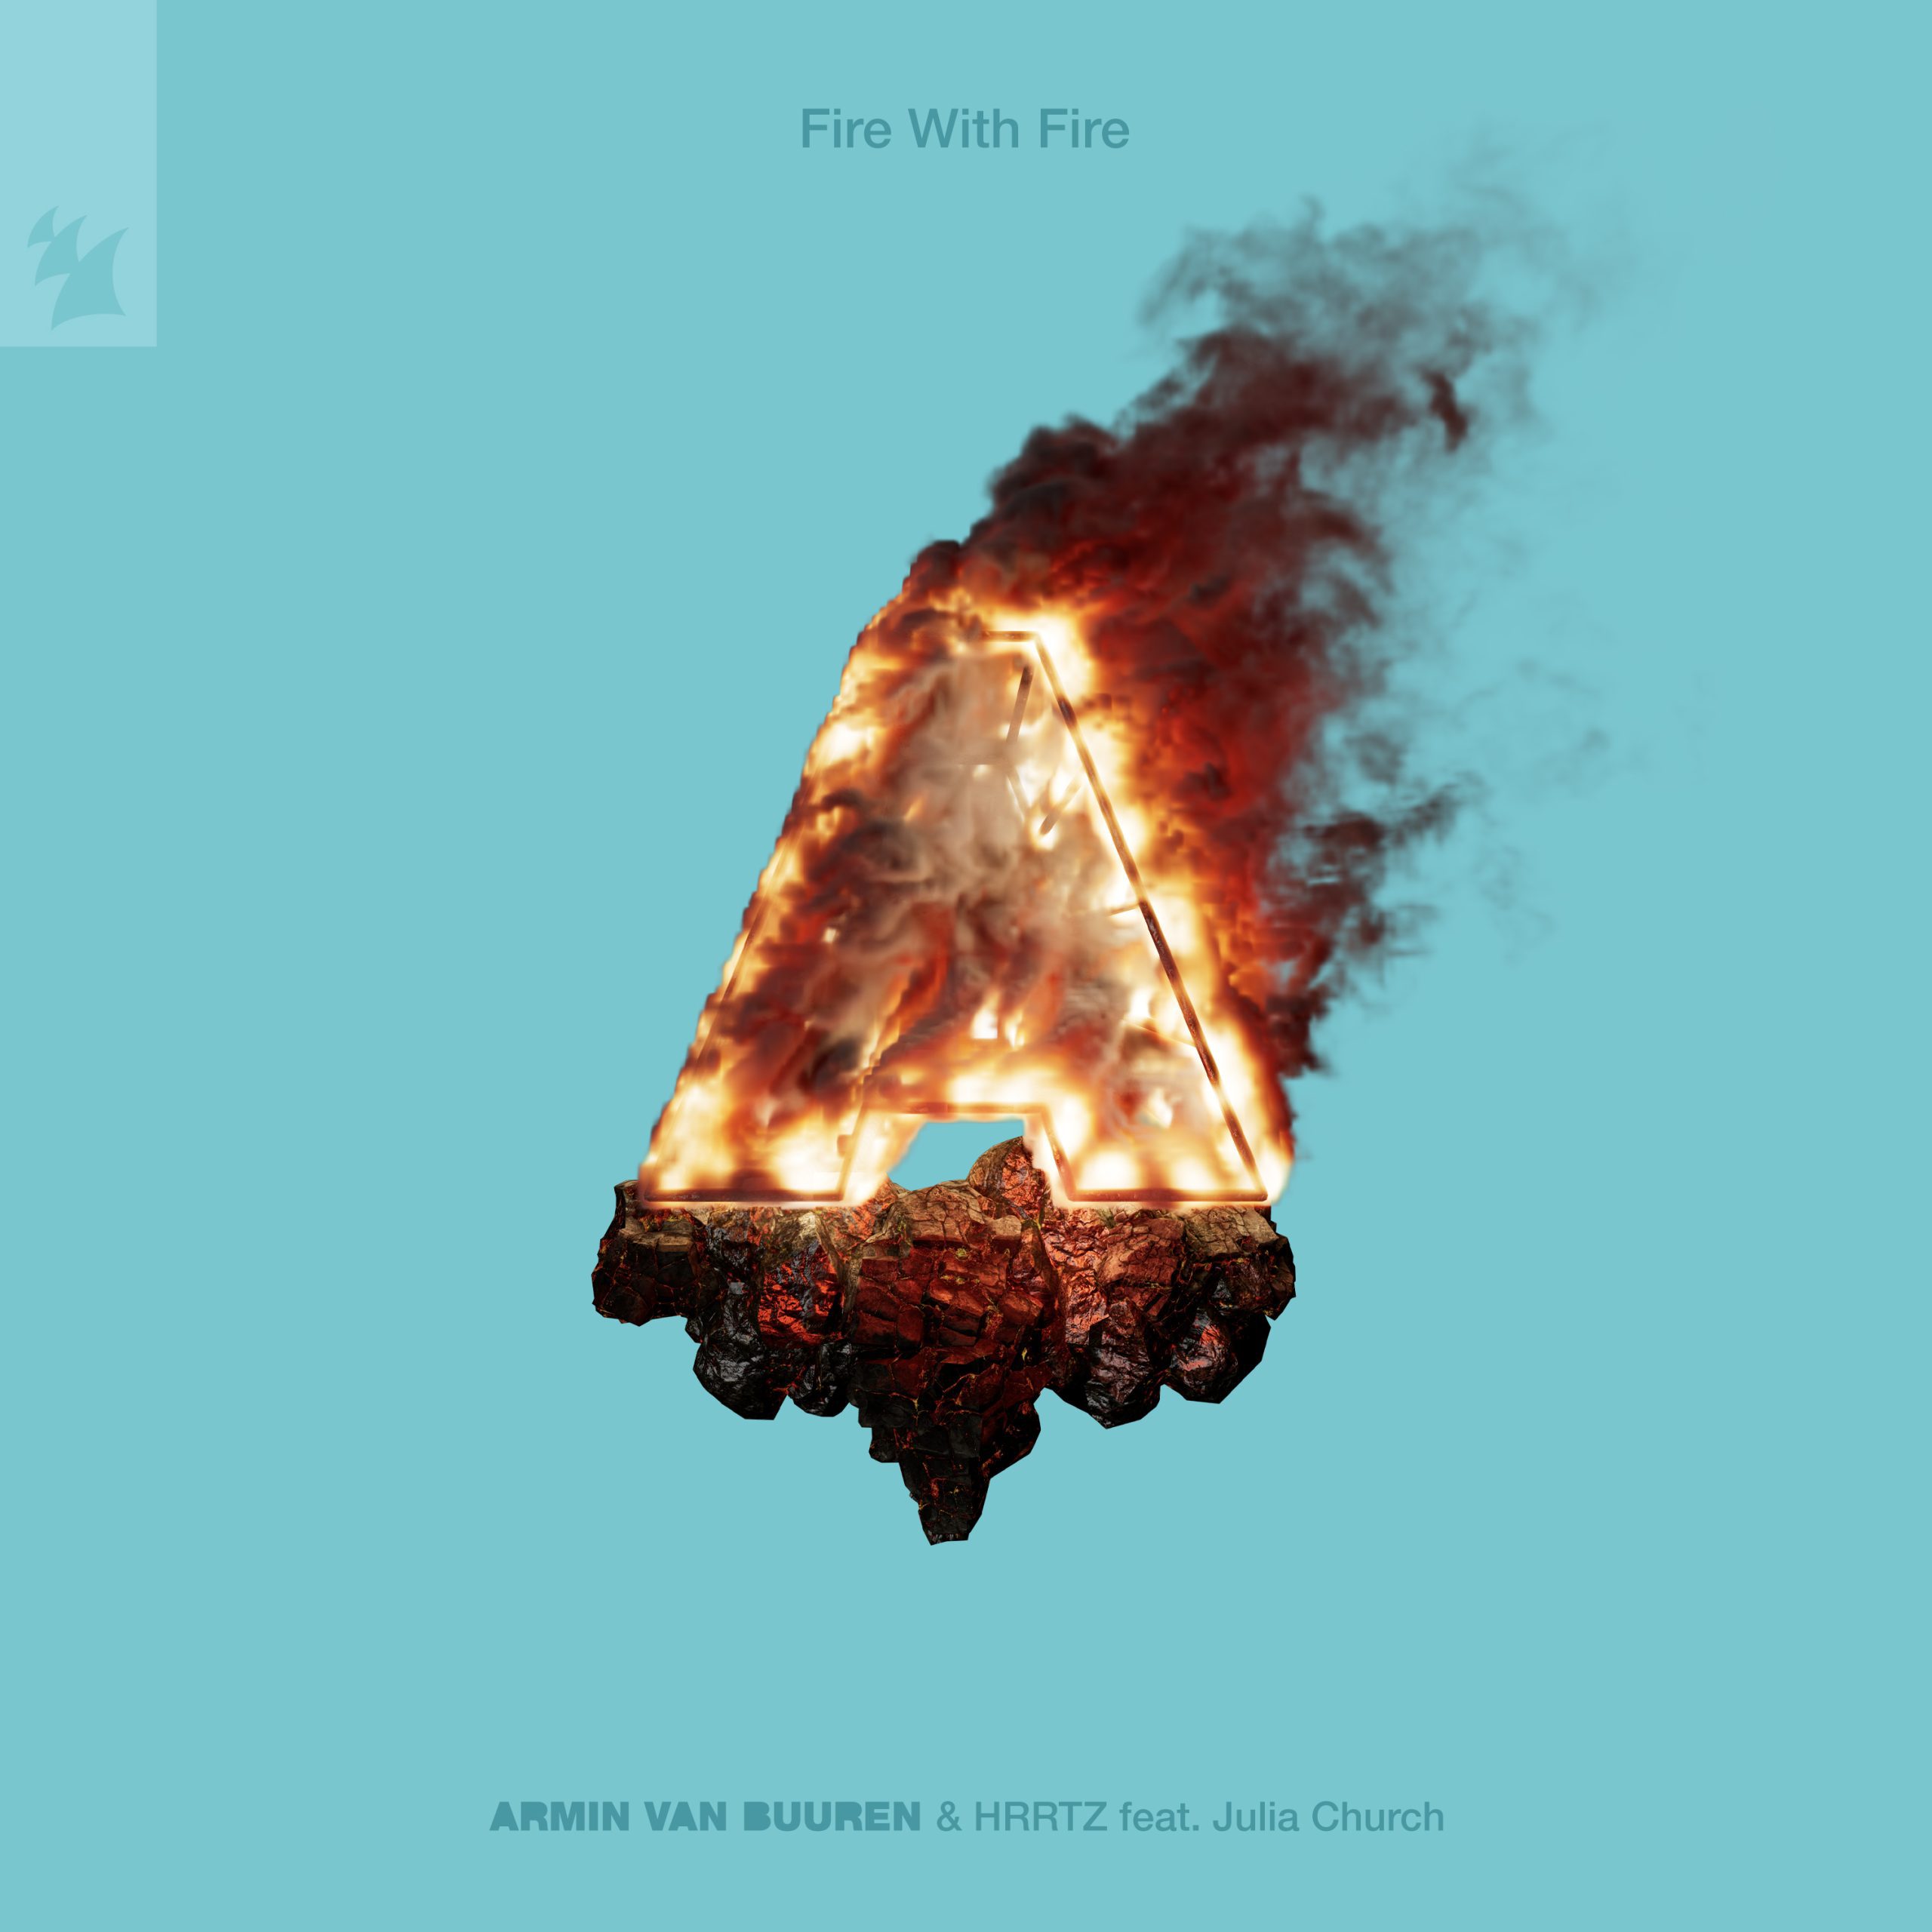 Armin van Buuren & HRRTZ featuring Julia Church — Fire With Fire cover artwork